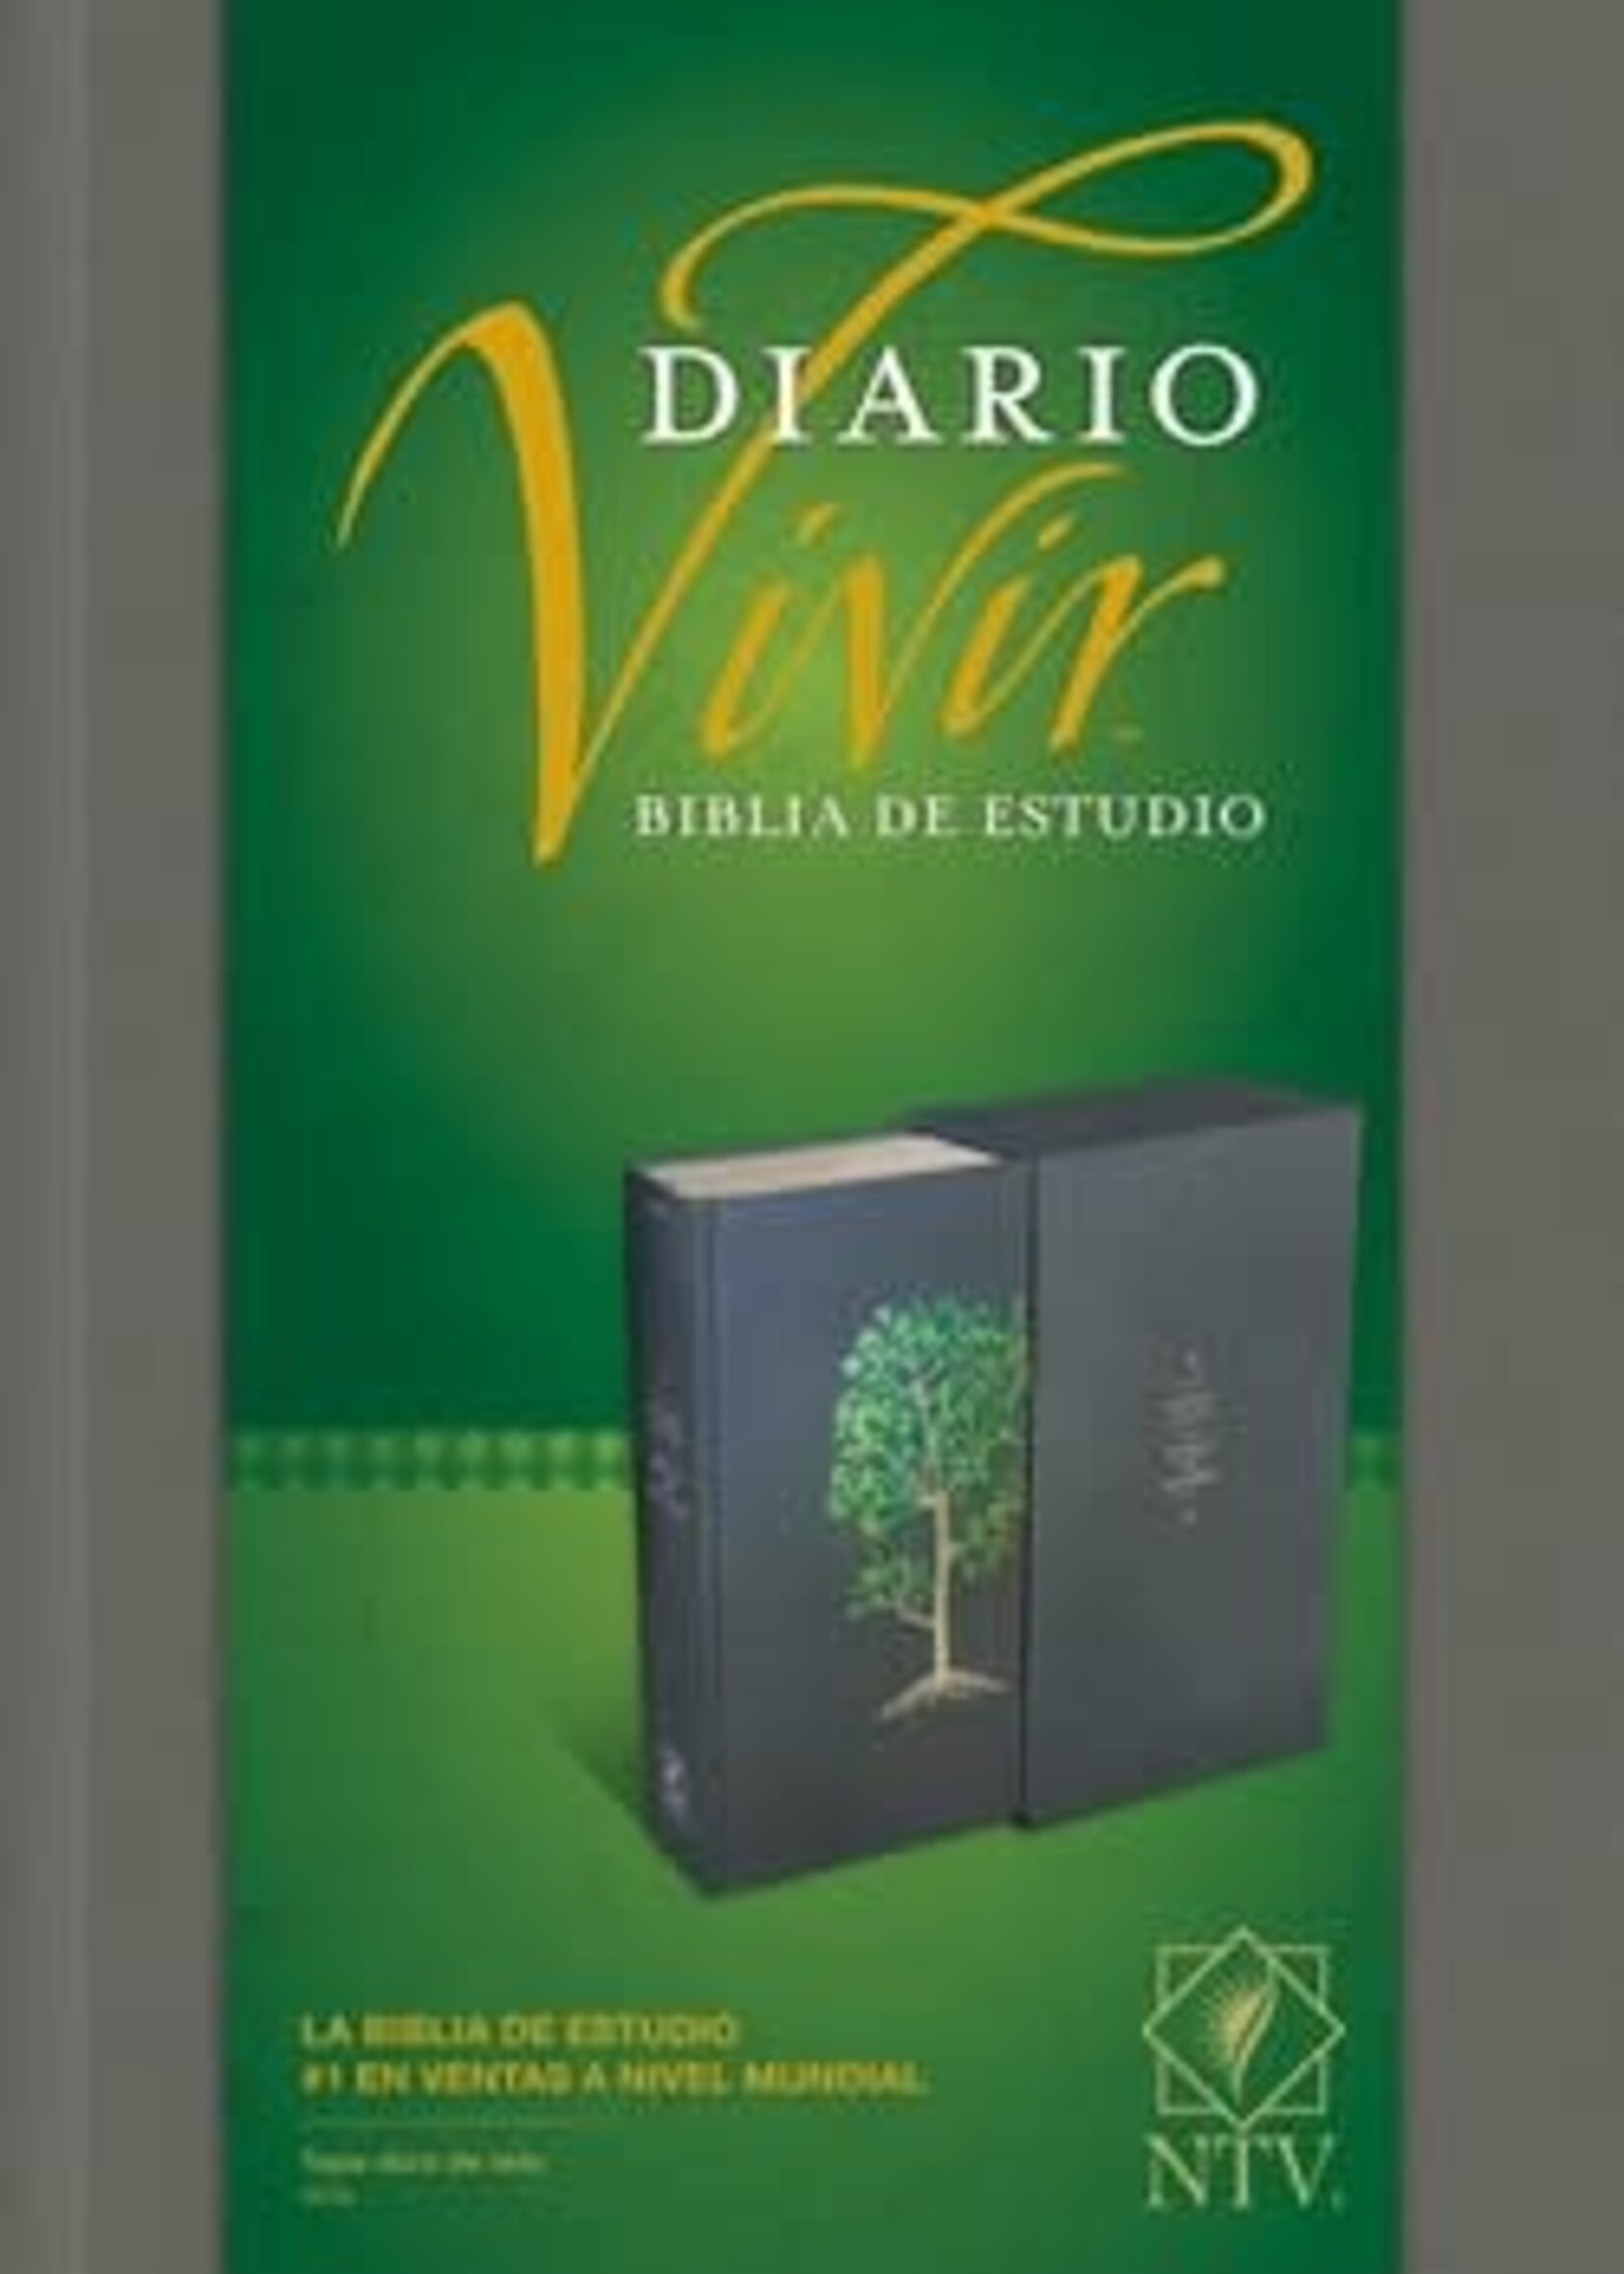 TYNDALE ESPANOL BIBLIA DE ESTUDIO DEL DIARIO VIVIR NTV PASTA DURA ARBOL VERDE